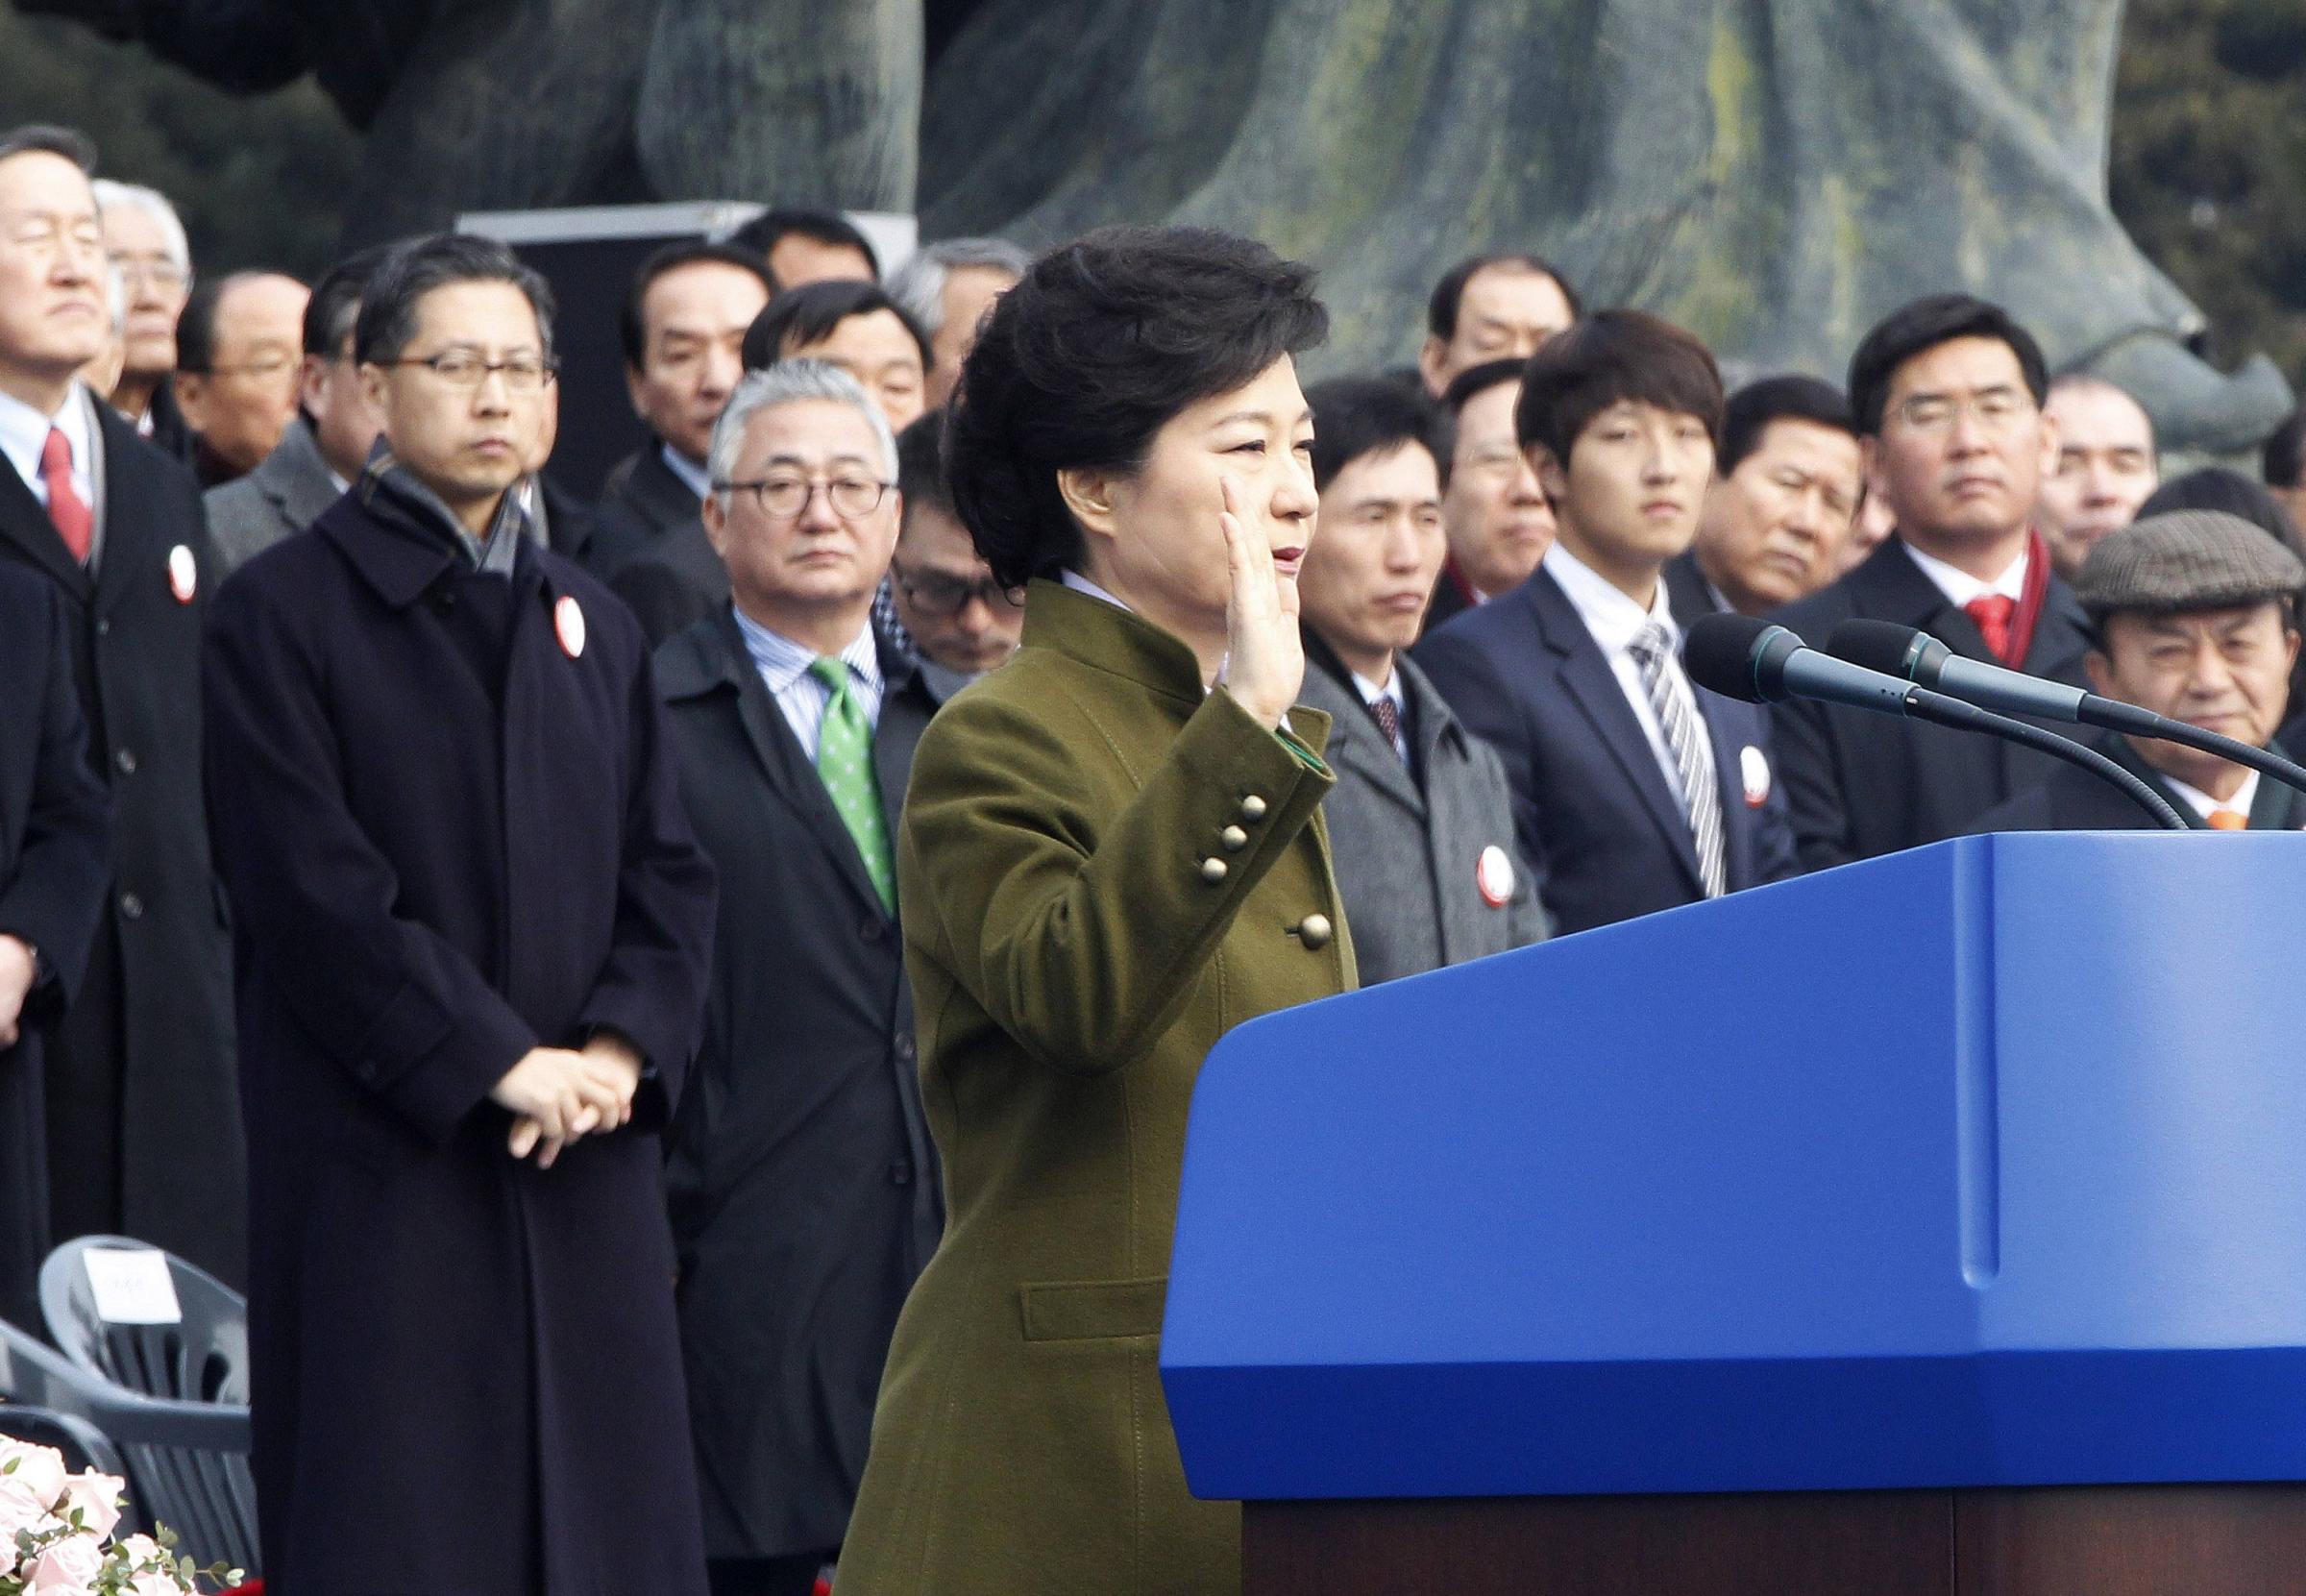 朴槿惠宣誓就职7万人捧场 承诺开启幸福新时代敦促朝鲜弃核